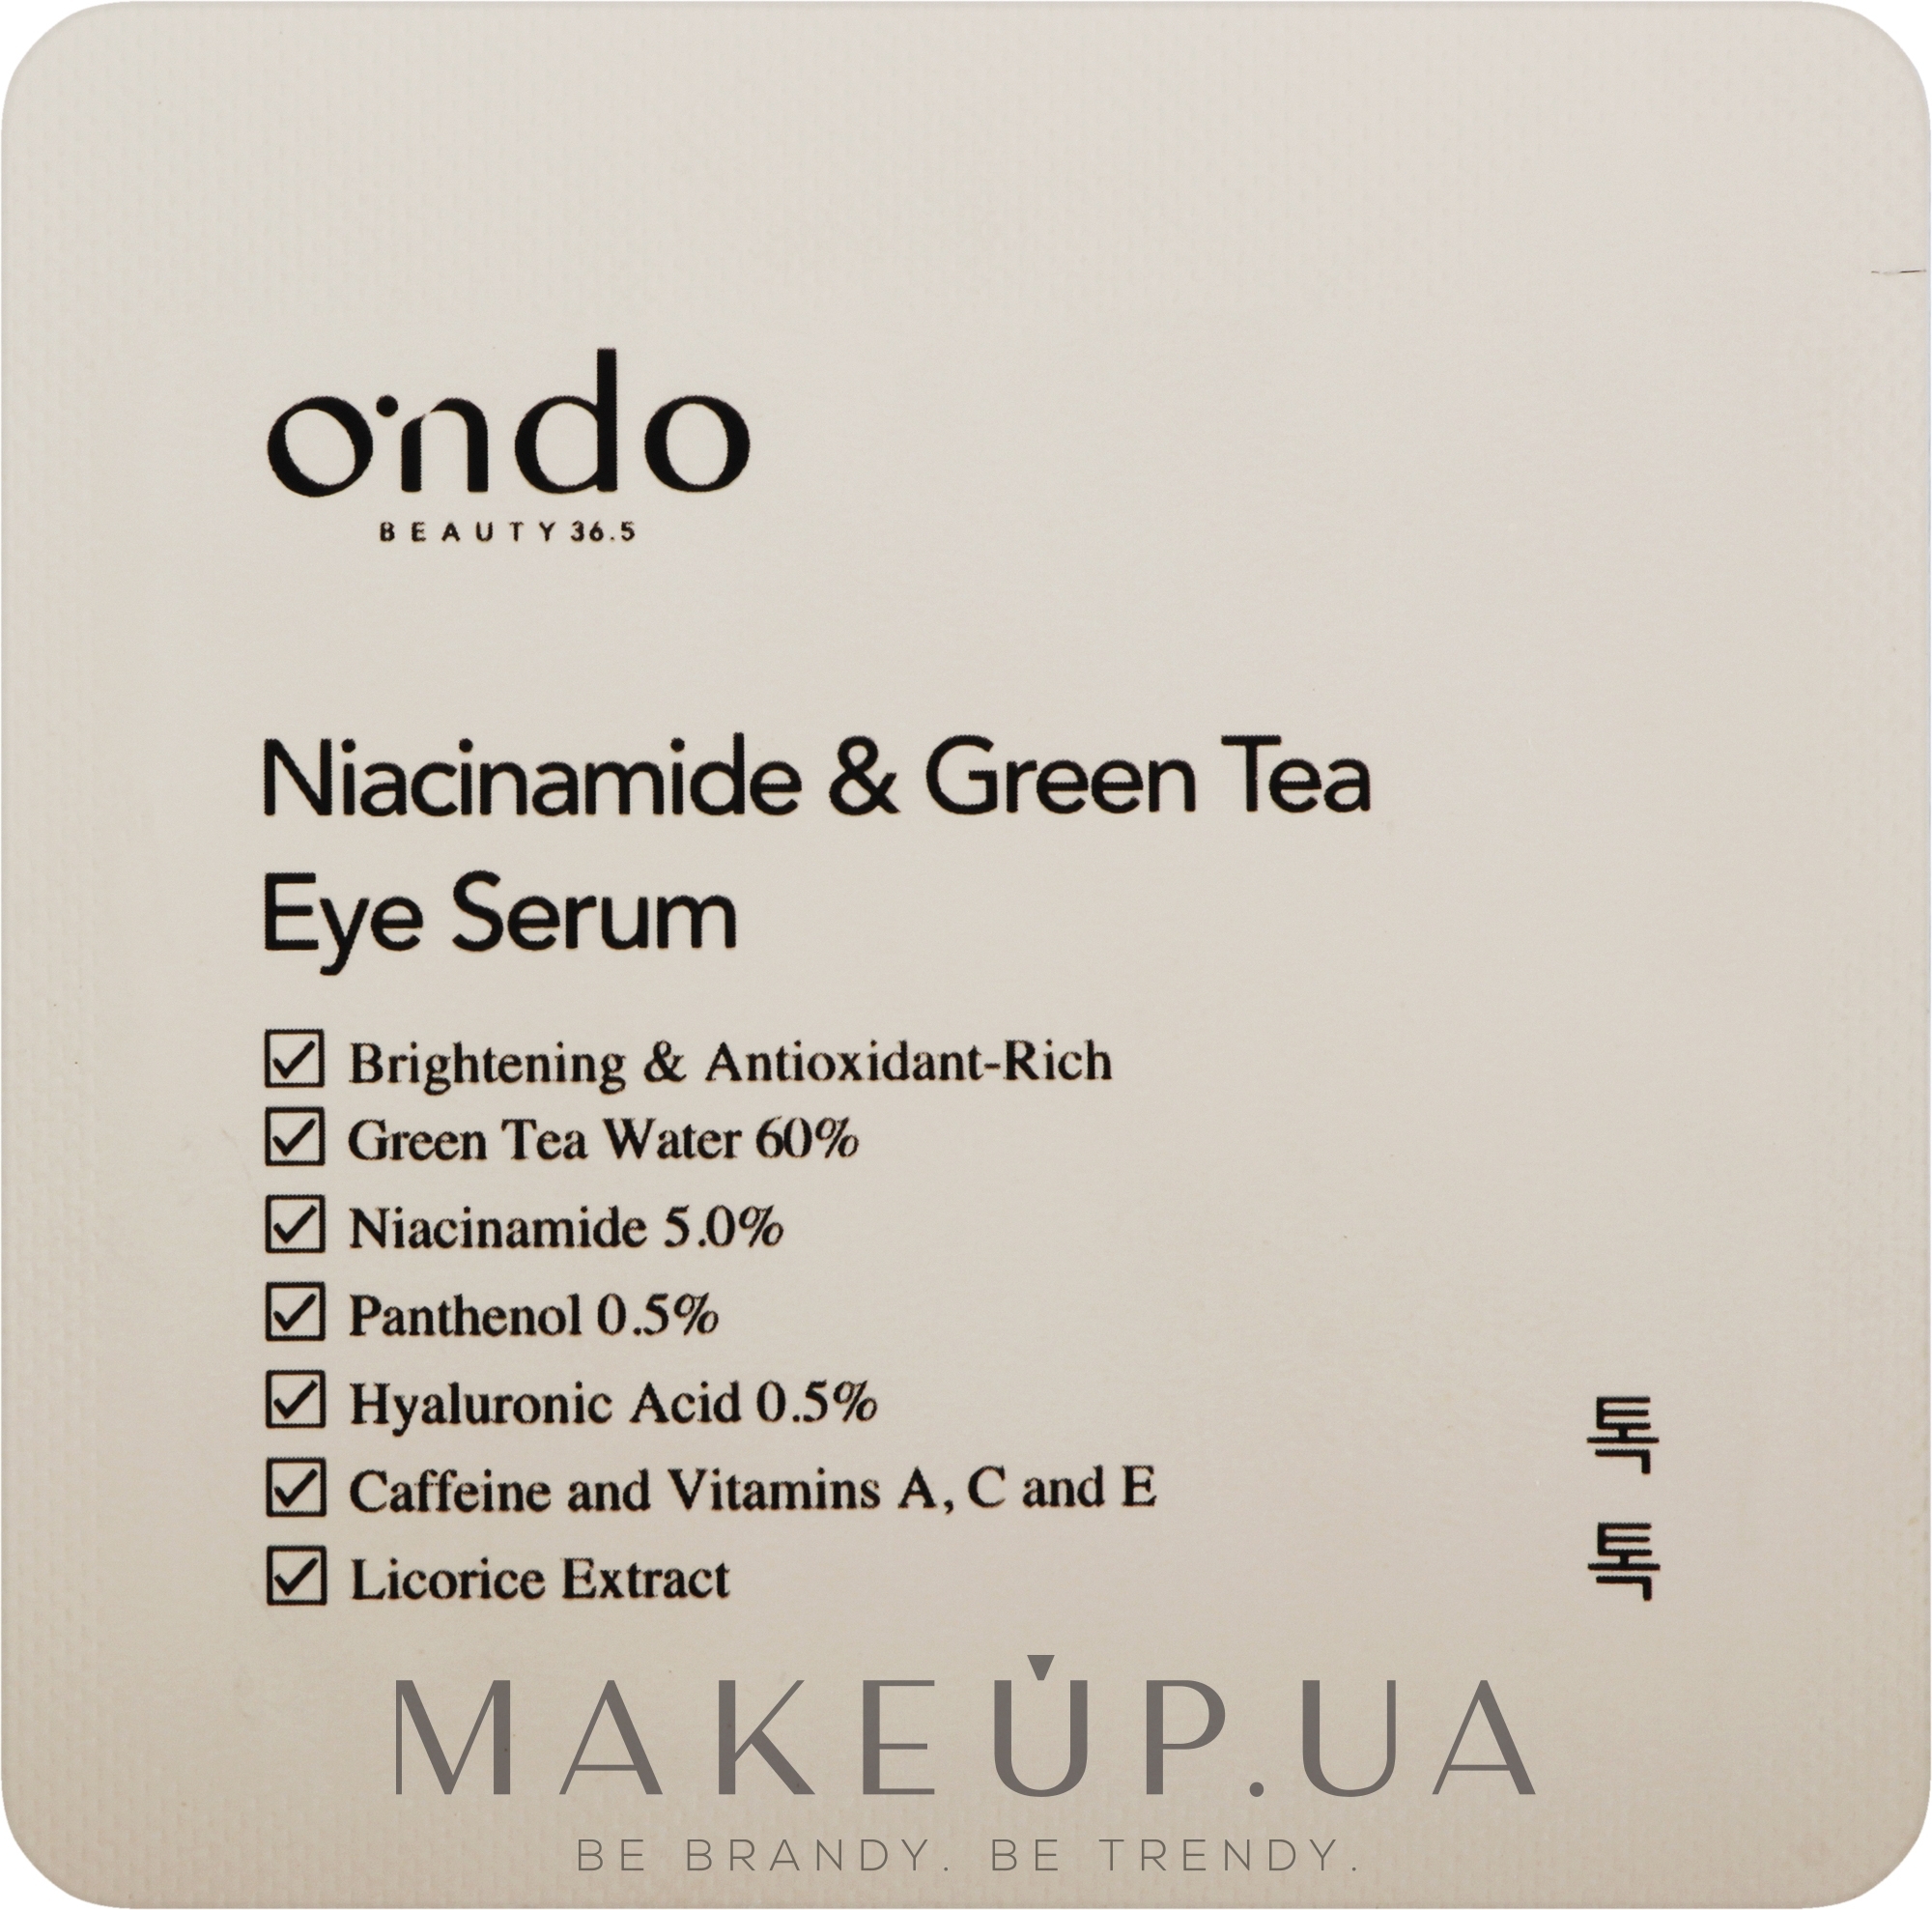 Сироватка для очей з ніацинамідом та зеленим чаєм - Ondo Beauty 36.5 Niacinamide & Green Tea Eye Serum — фото 1.5ml